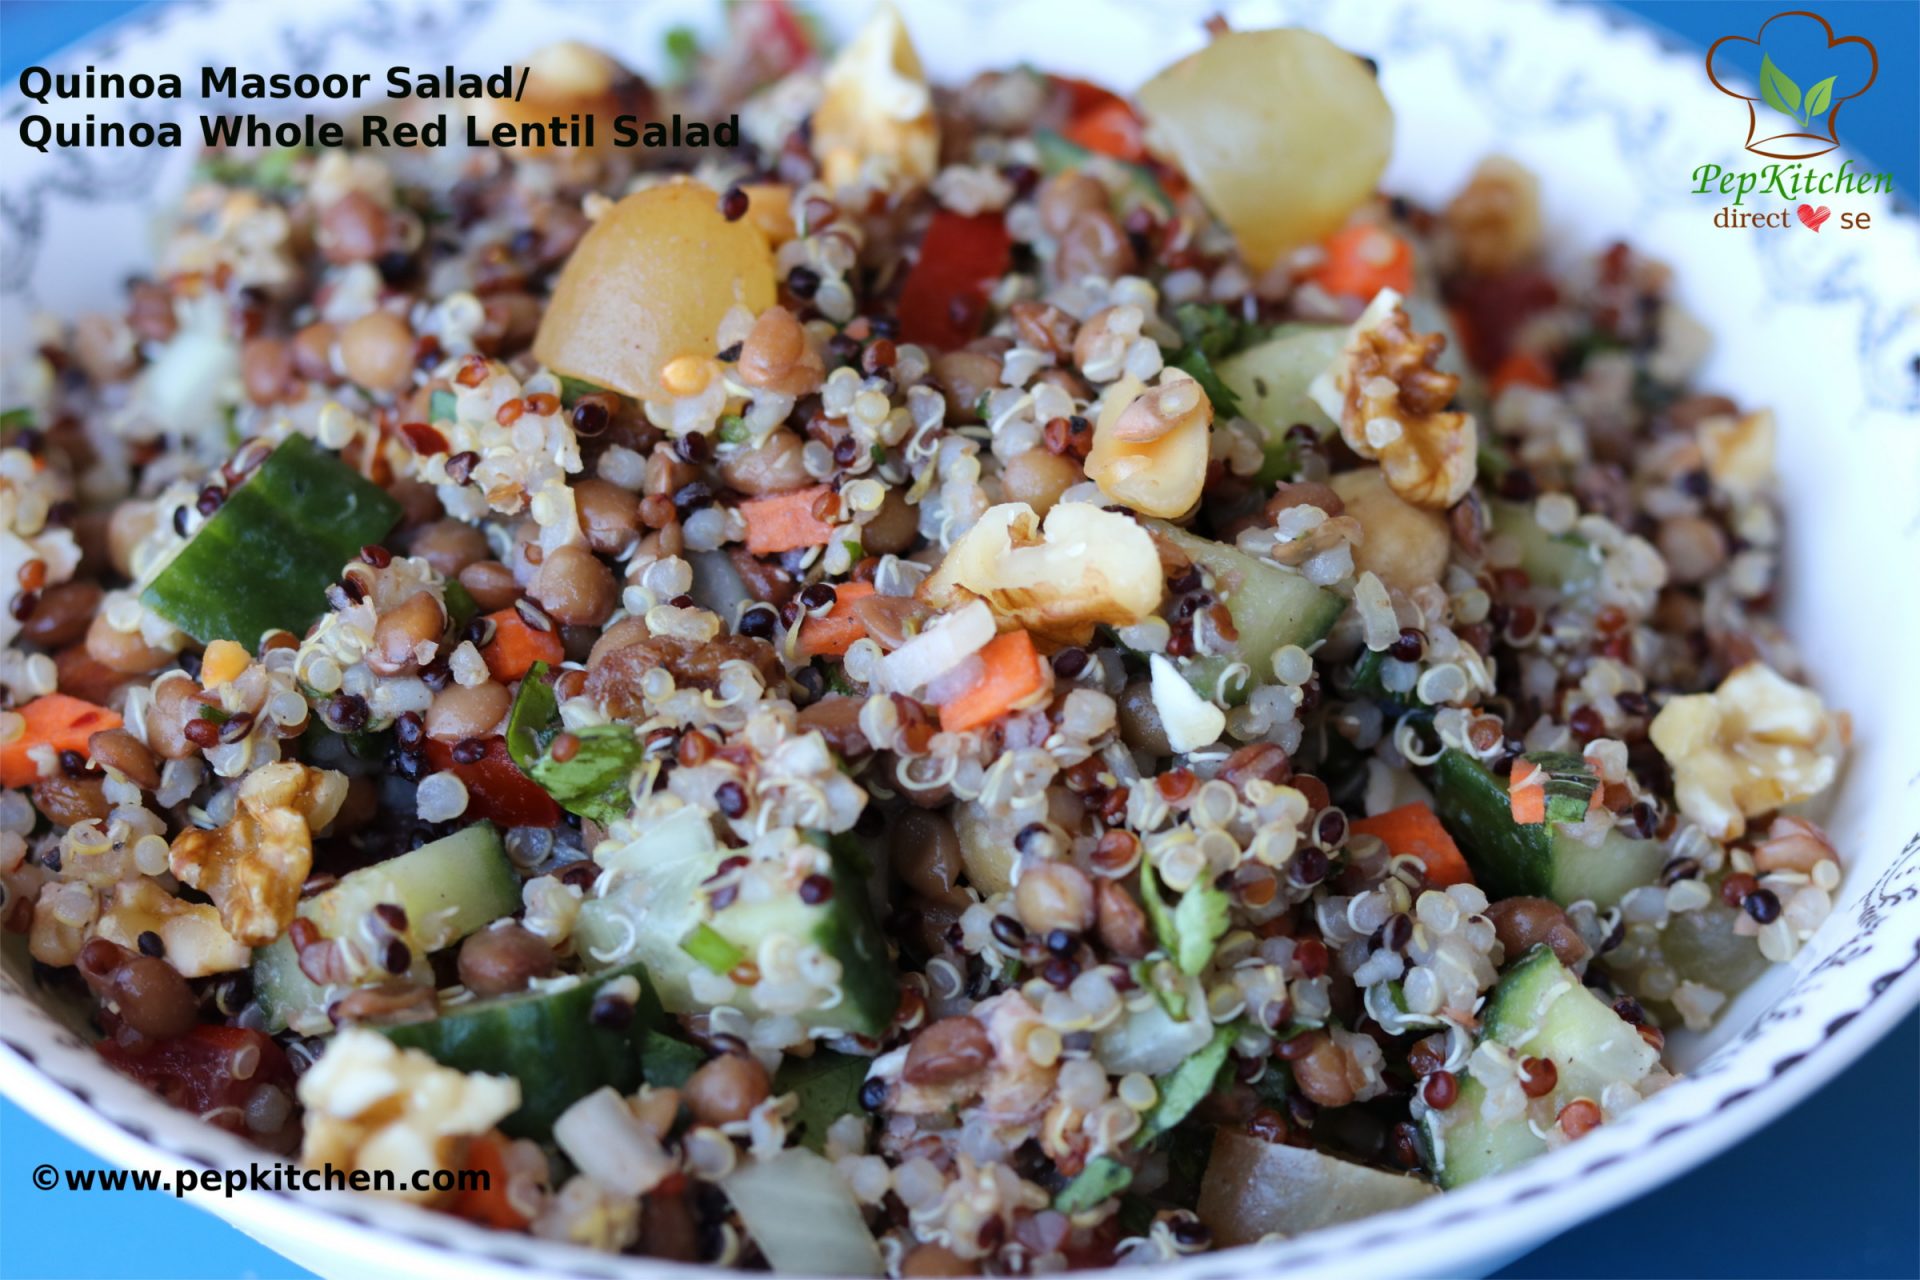 Quinoa Masoor Salad/ Quinoa Whole Red Lentil Salad